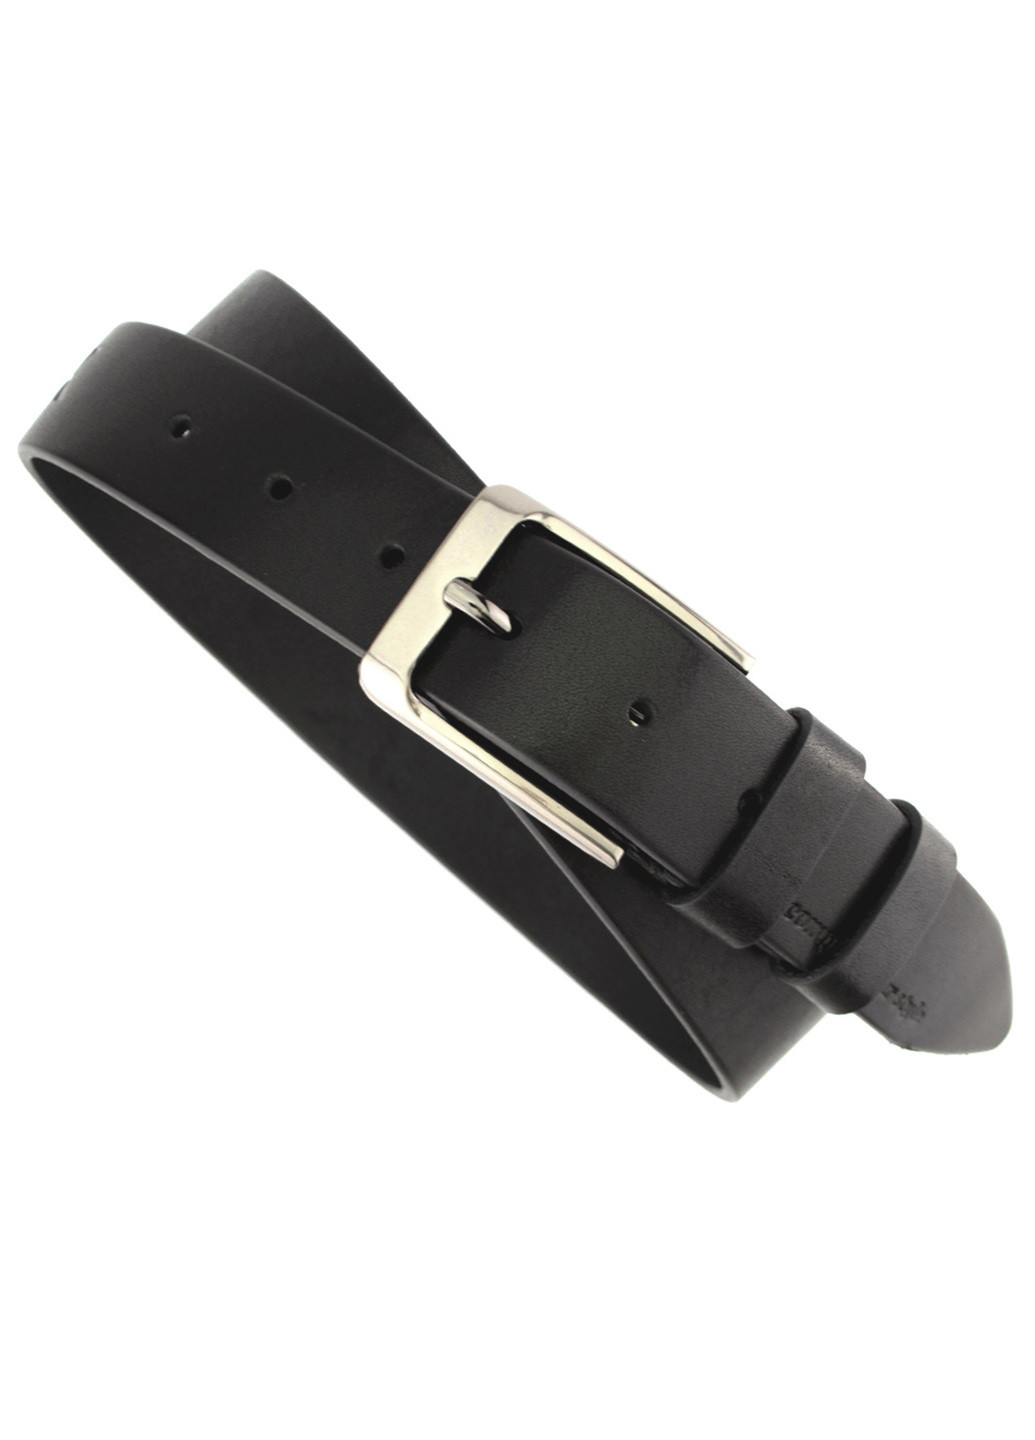 Ремень мужской кожаный черный классика -3566 (120 см) Black JK (211603497)